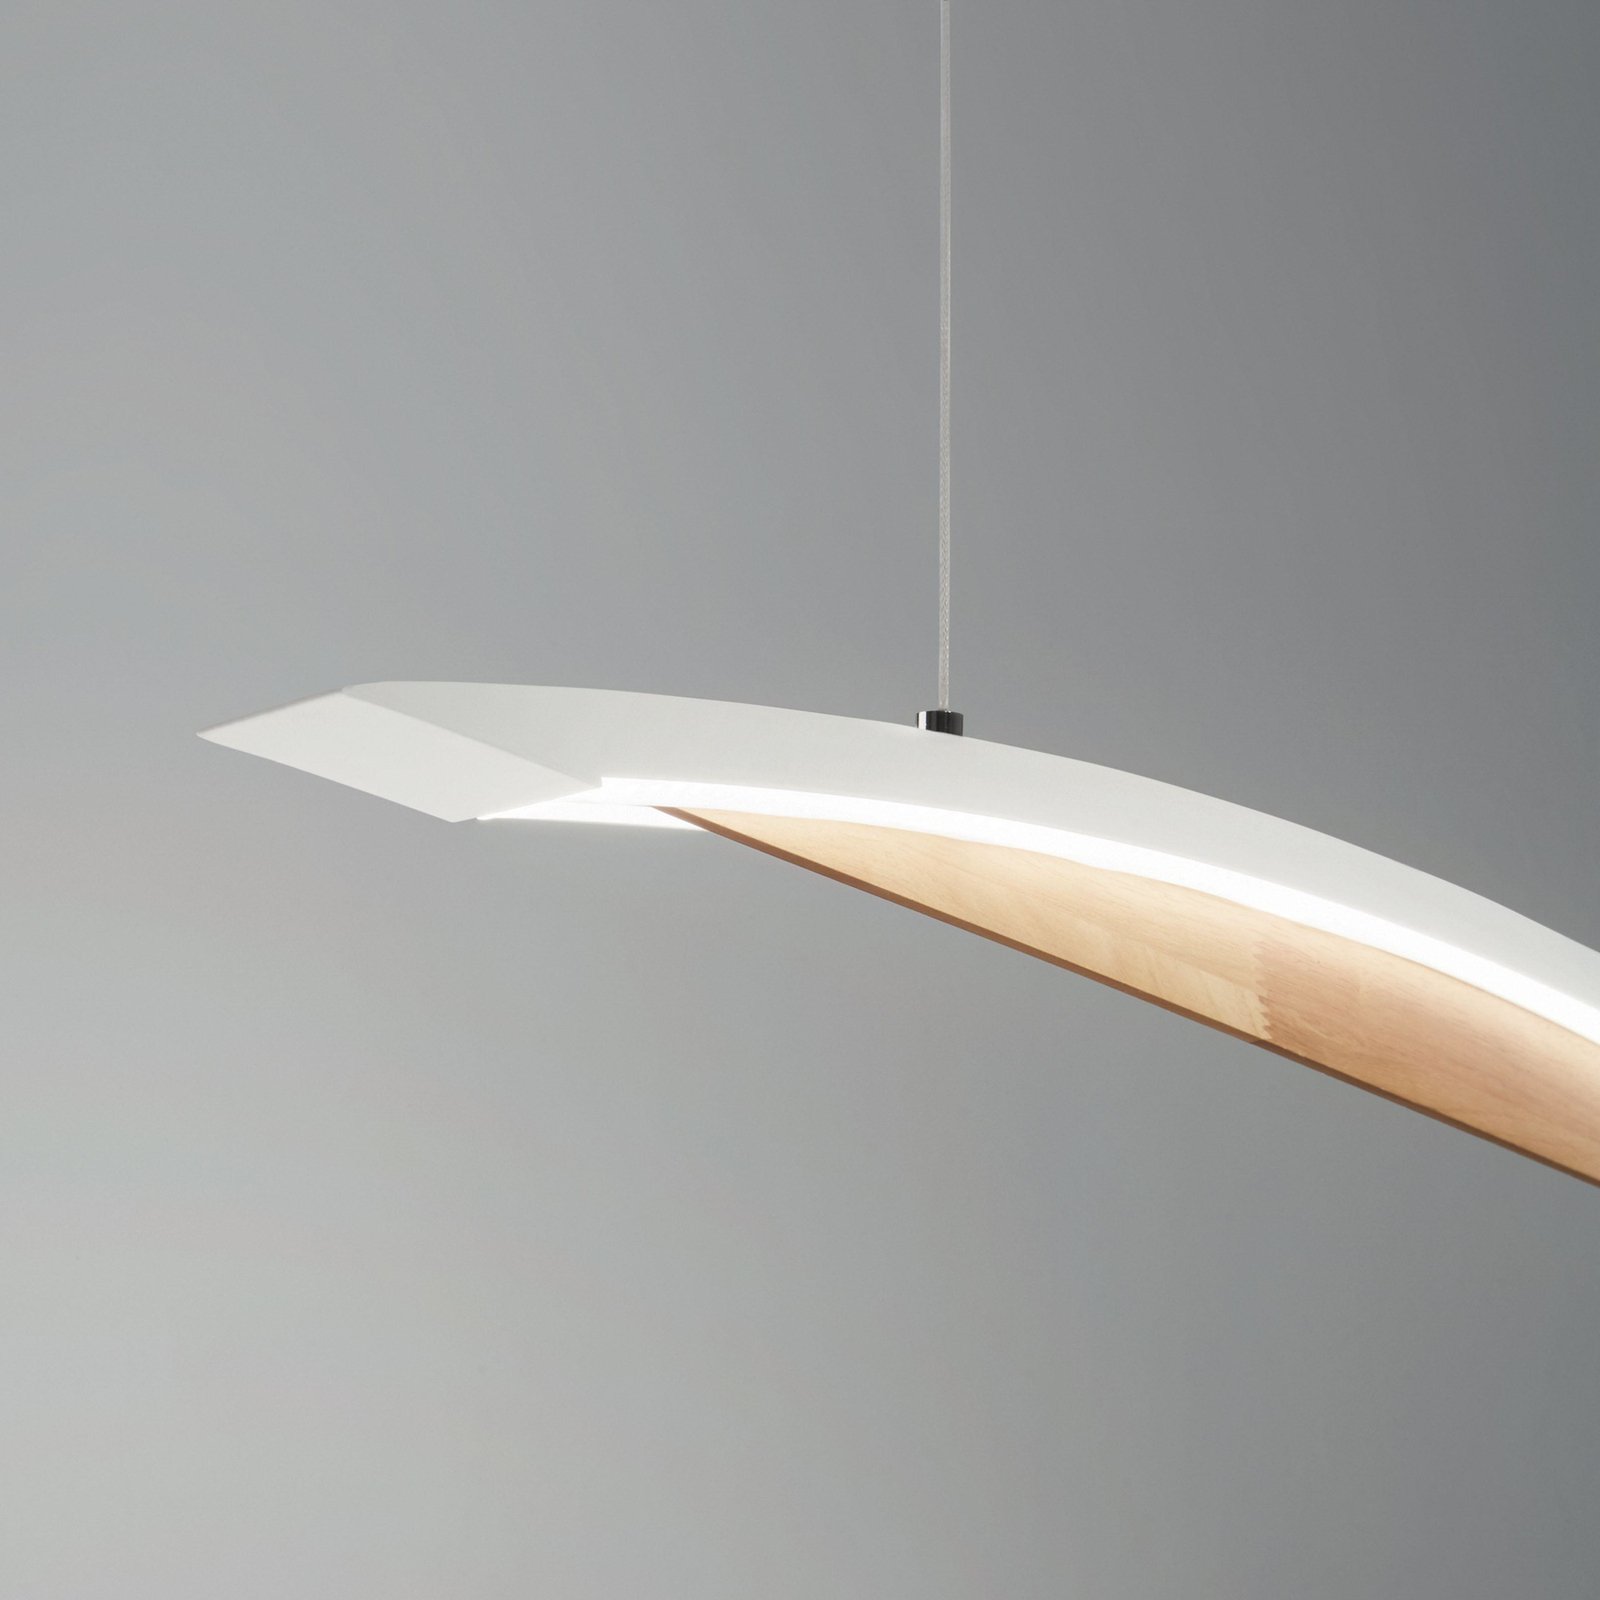 Lampa wisząca LED Cordoba, długość 110 cm, metal/drewno, ściemniana